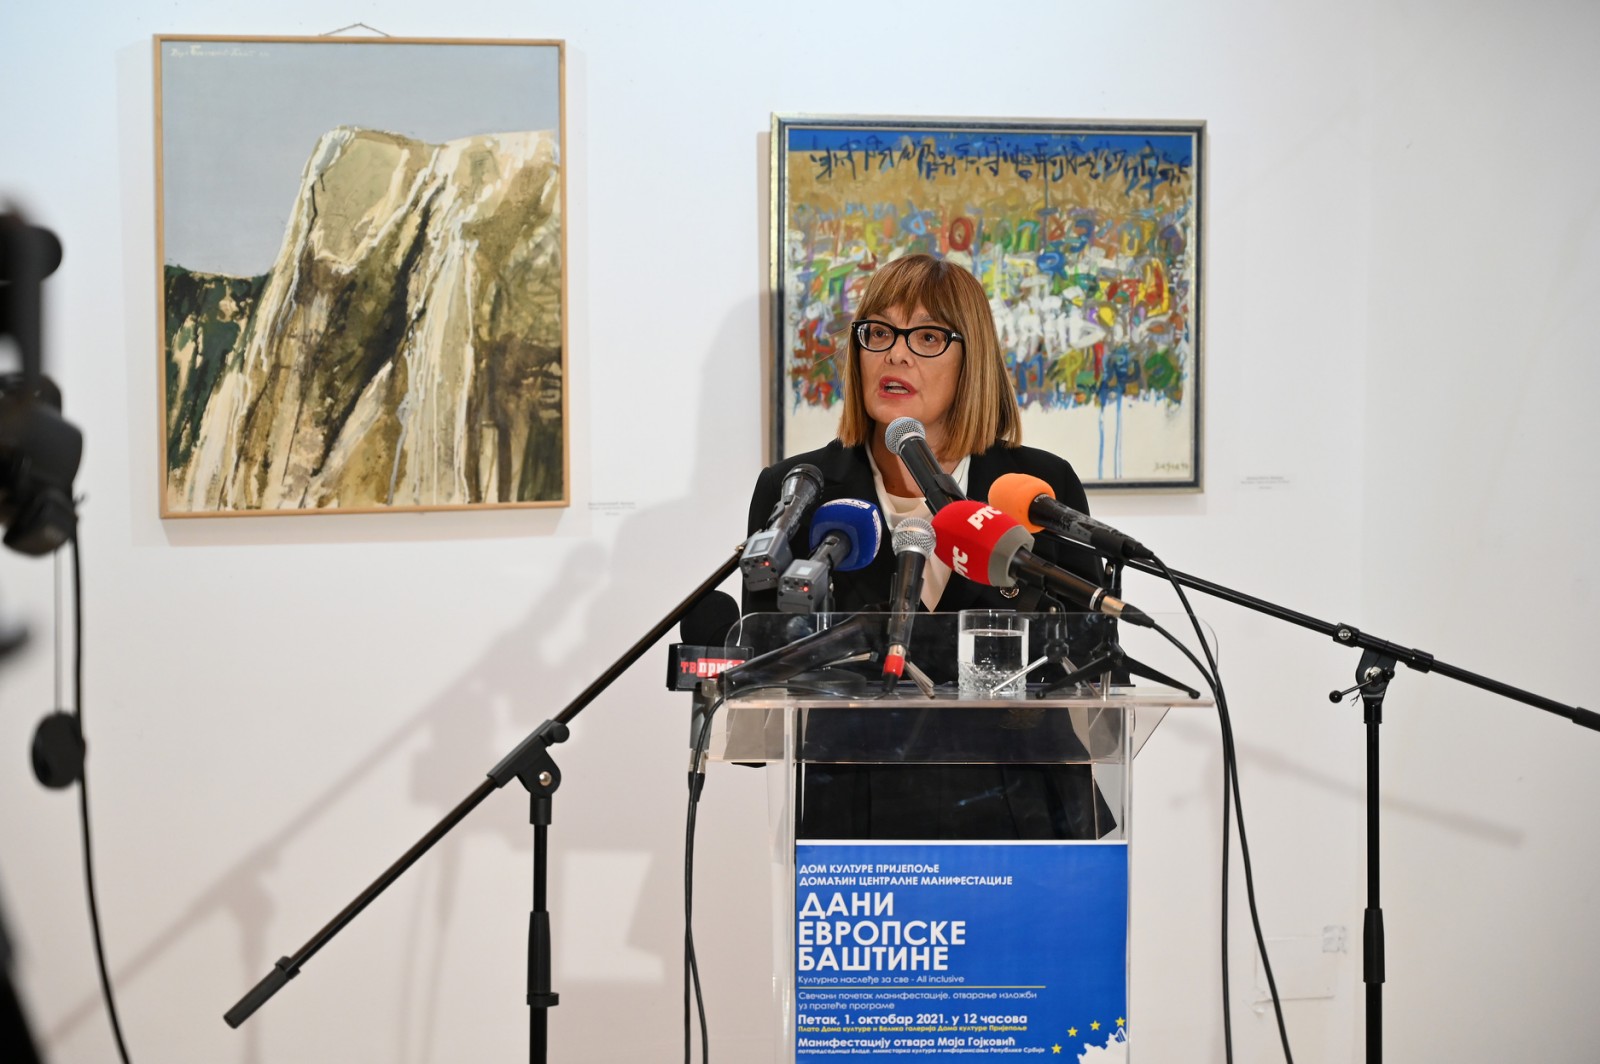 Гојковић отворила „Дане европске баштине“ у Србији